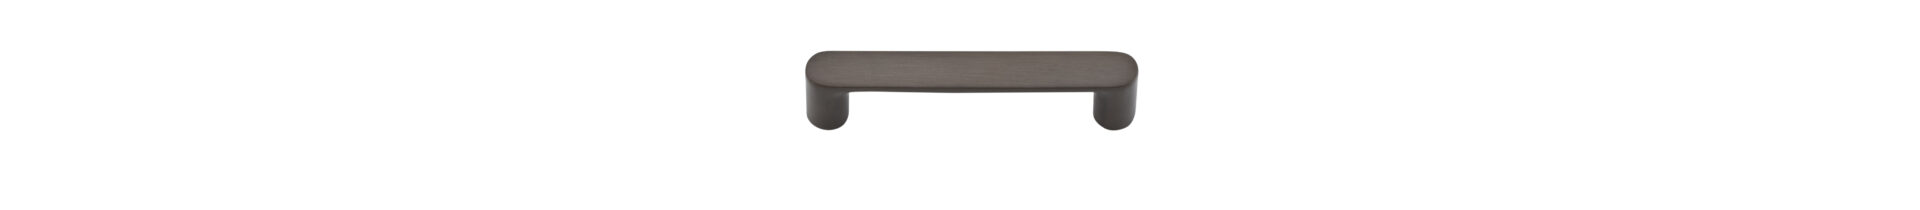 20941 - Osaka Cabinet Pull - CTC96mm - Signature Brass